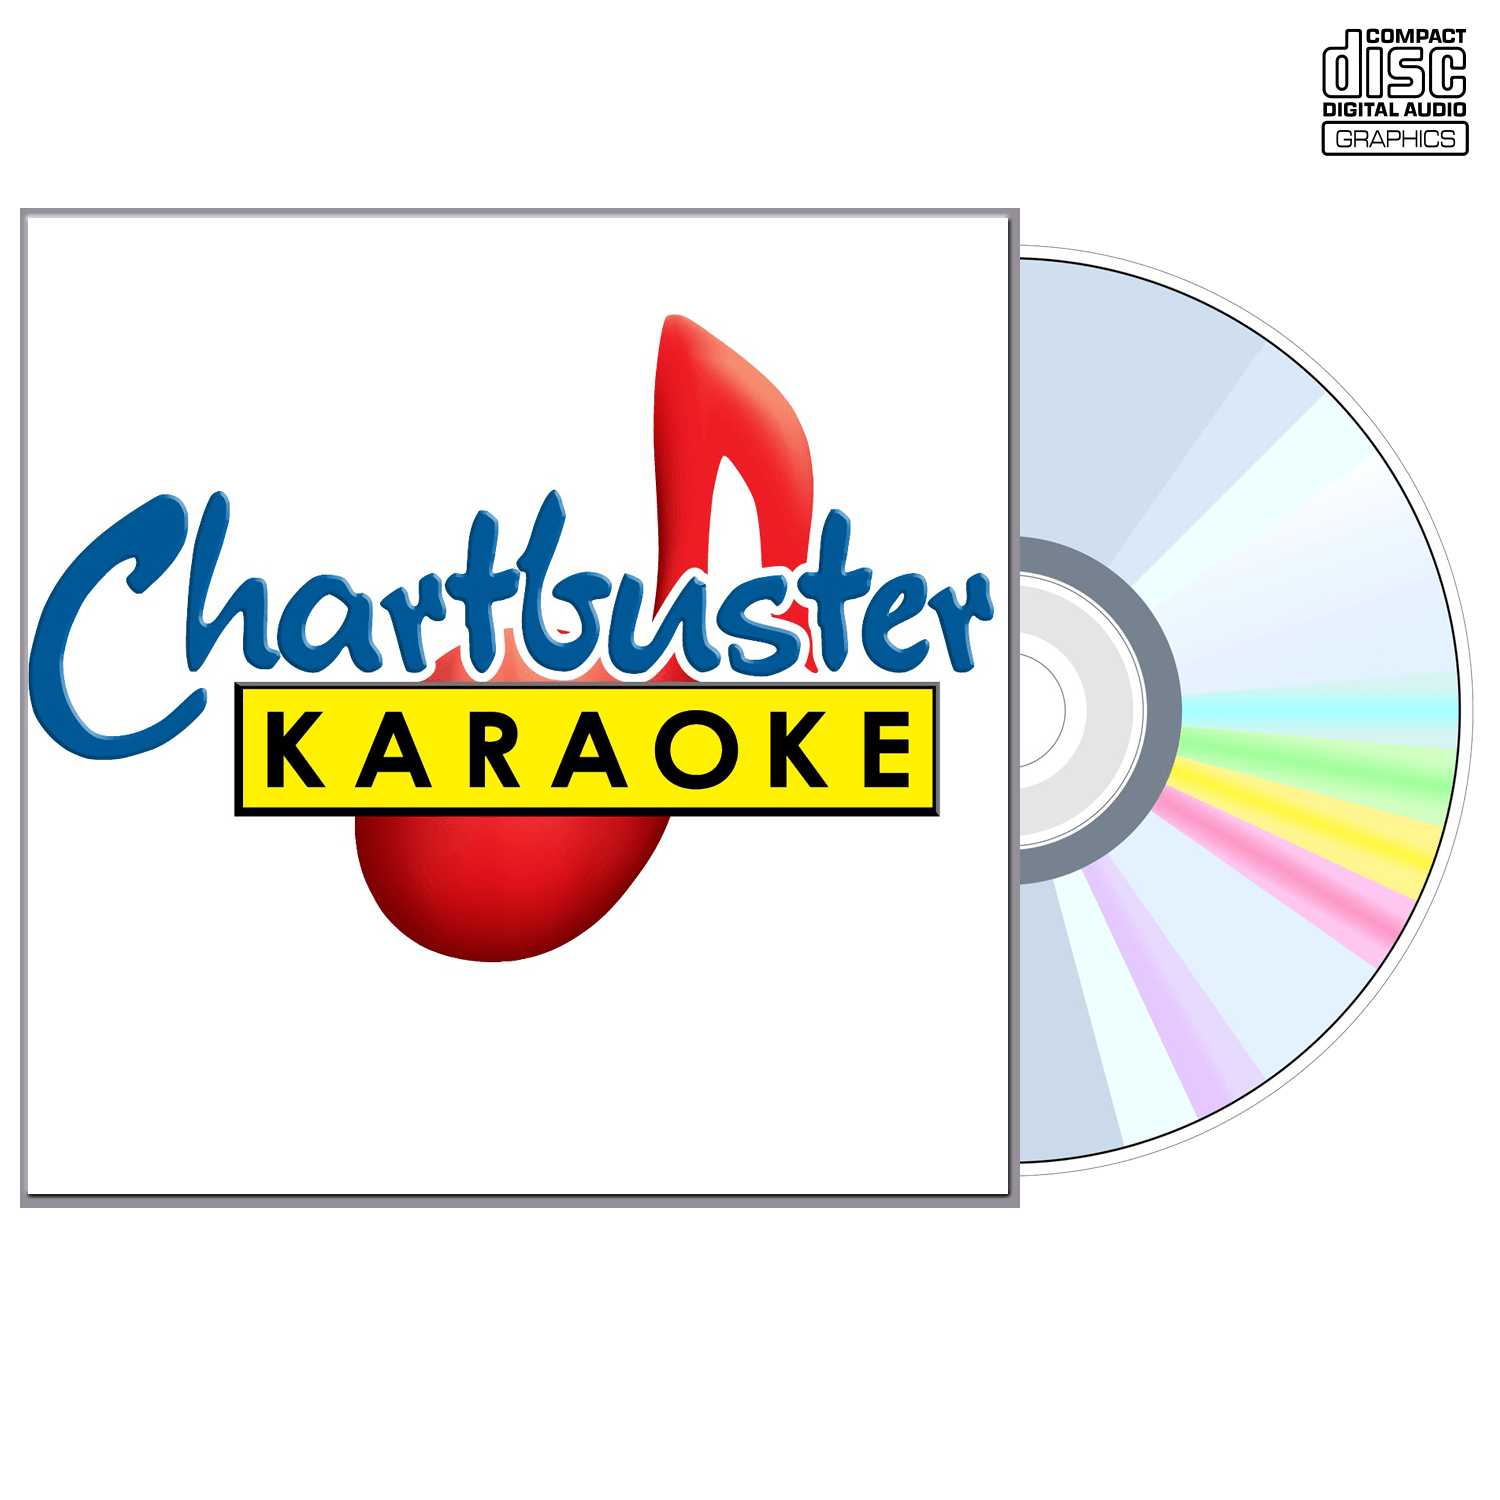 Shinedown - CD+G - Chartbuster Karaoke - Karaoke Home Entertainment